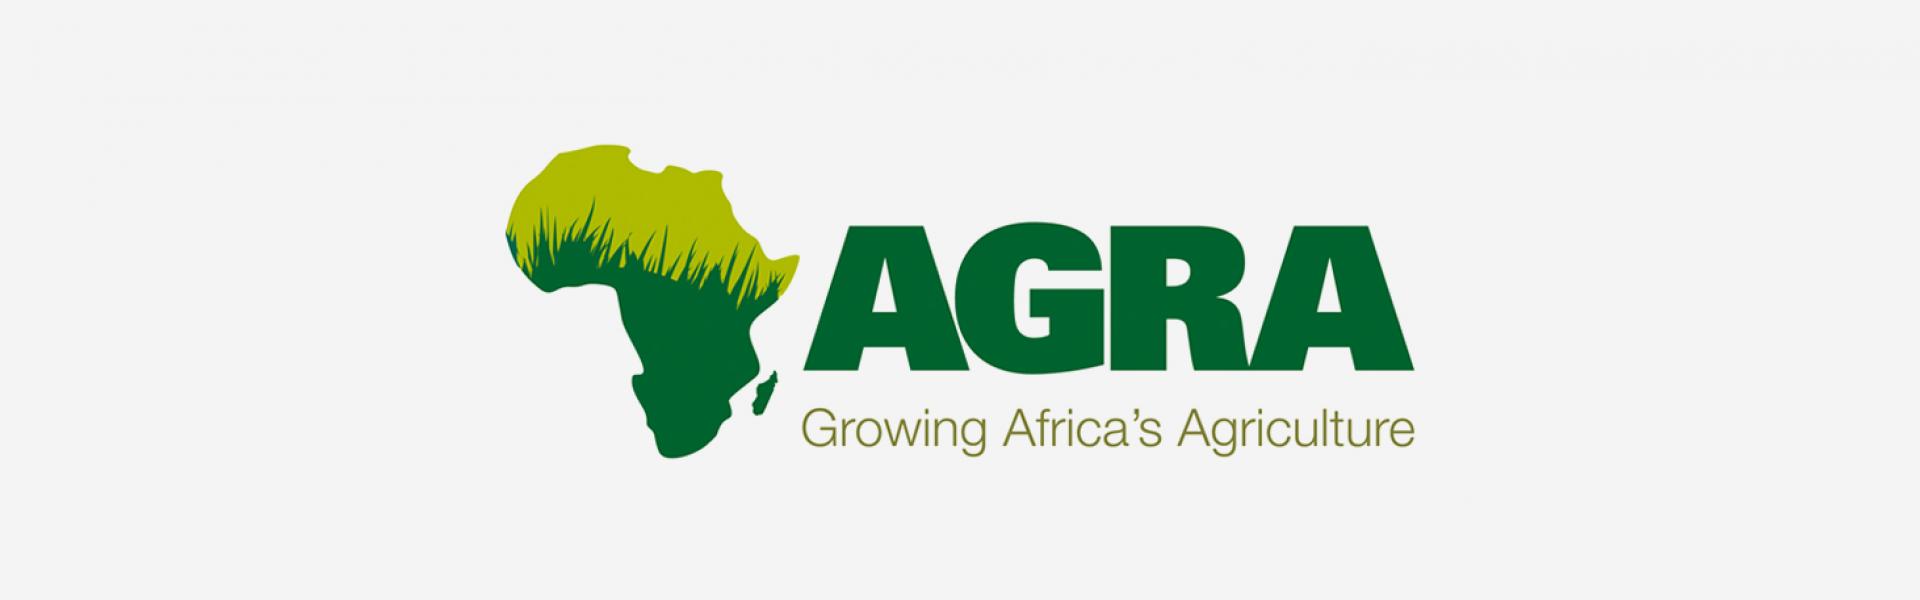 Logo AGRA